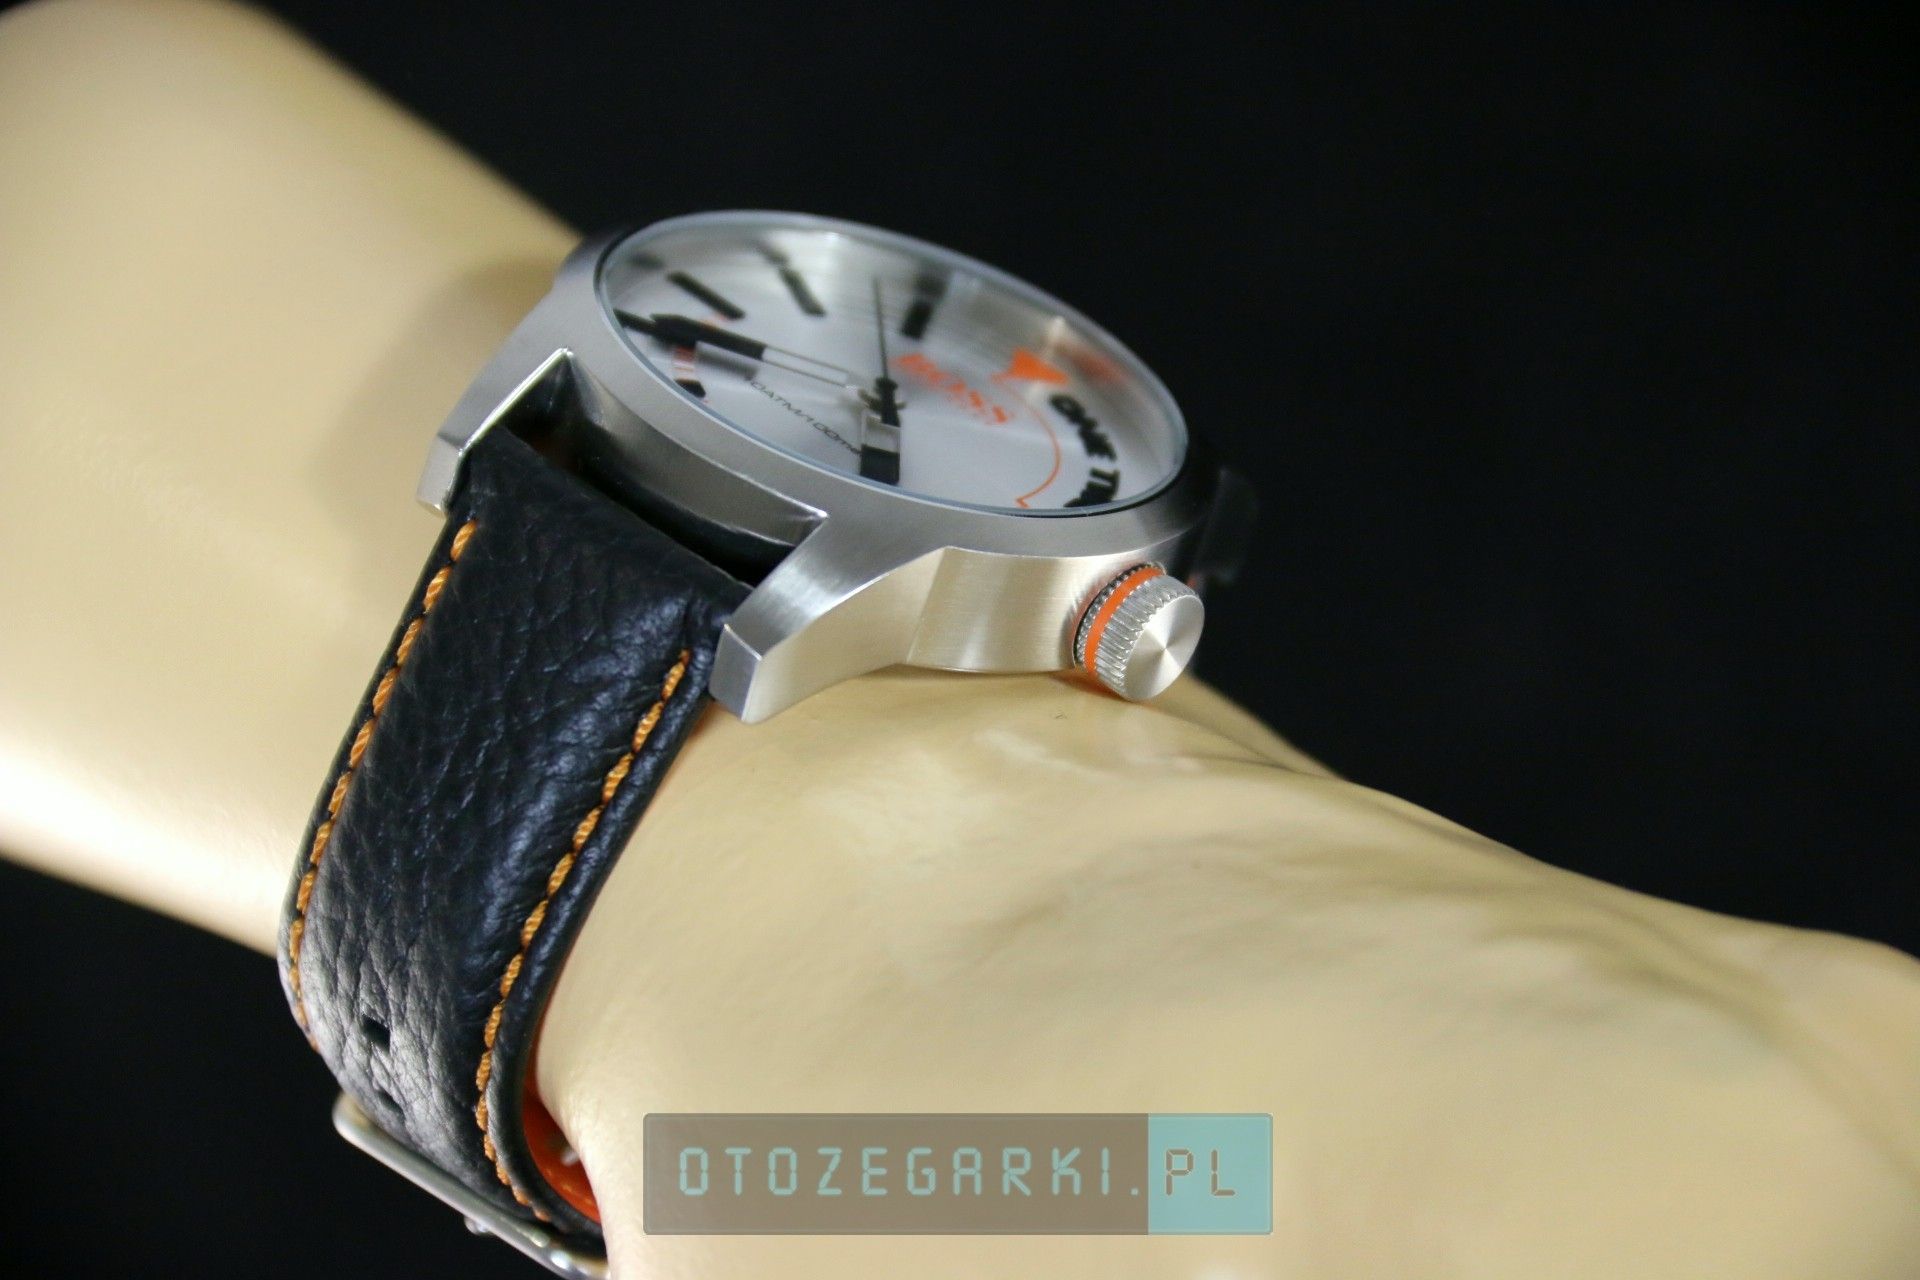 Hugo Boss 1513215 - Zegarek Męski Hugo Boss Orange Tokyo - 384,00 zł -  Otozegarki.pl